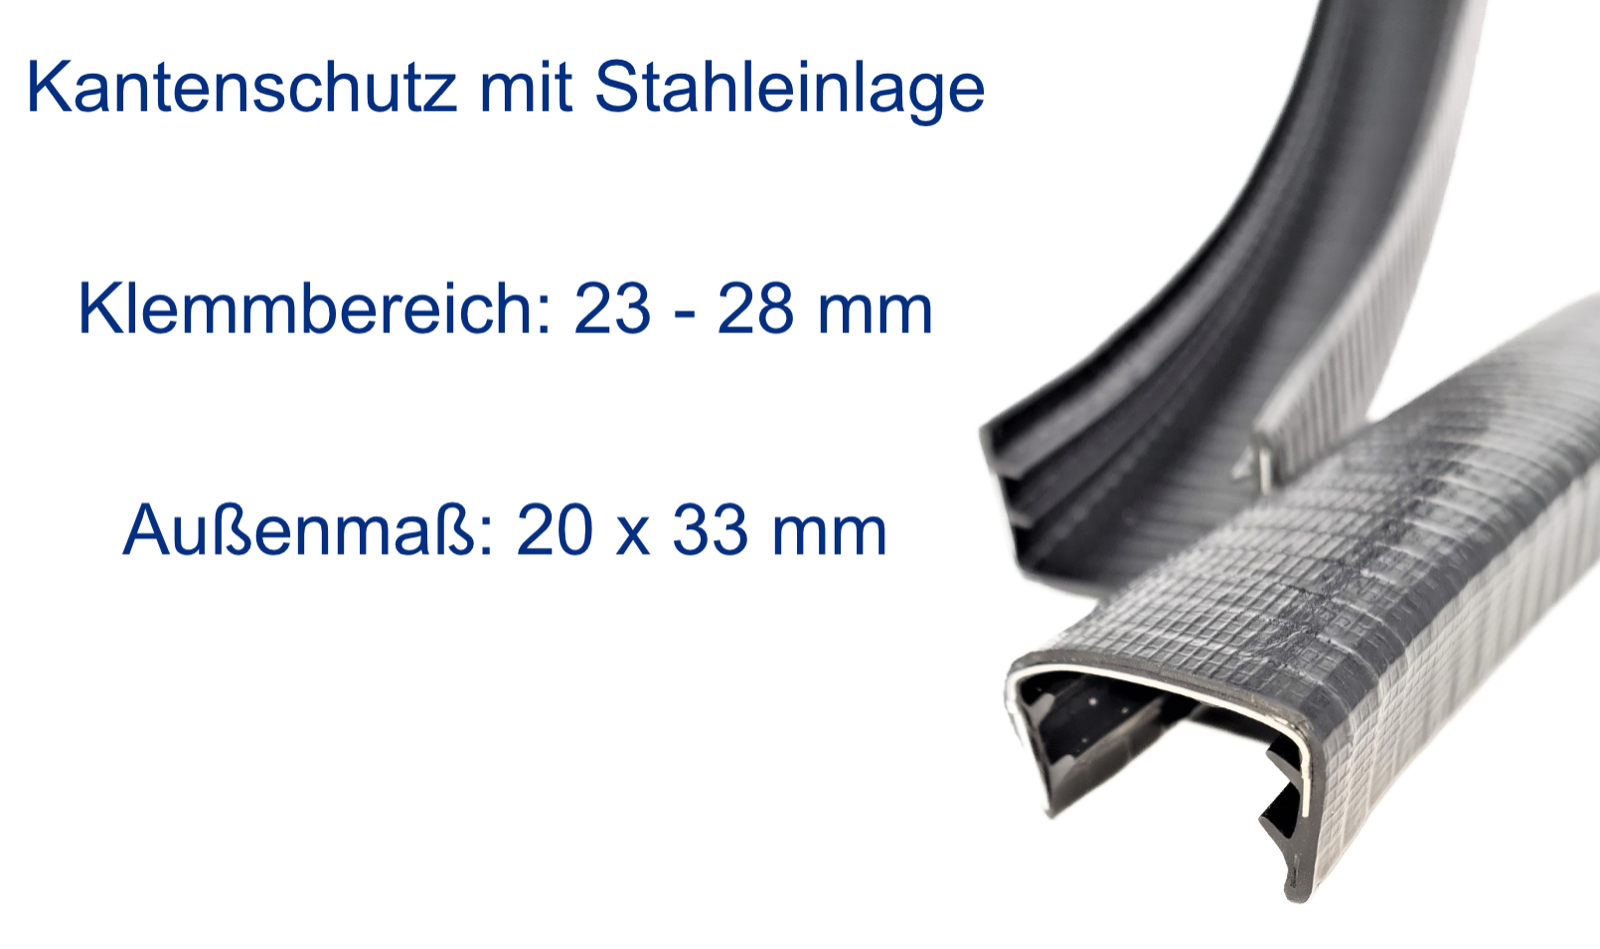 Kantenschutz mit Stahleinlage, Klemmbereich 23-28mm, Schwarz